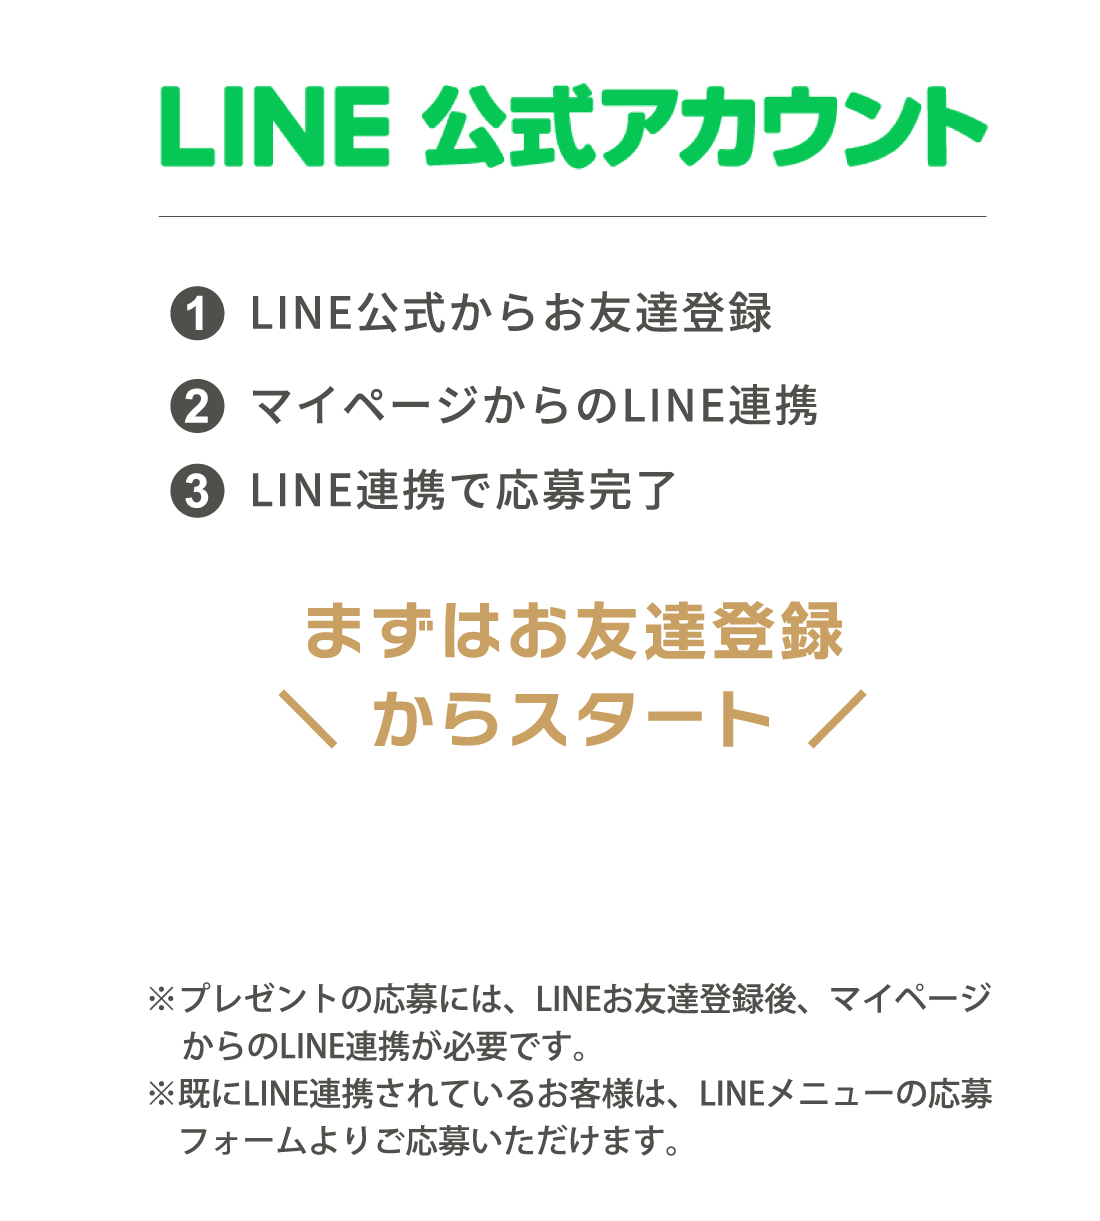 １．LIN公式からお友達登録、２．マイページからのLINE連携、３．LINE連携で応募完了